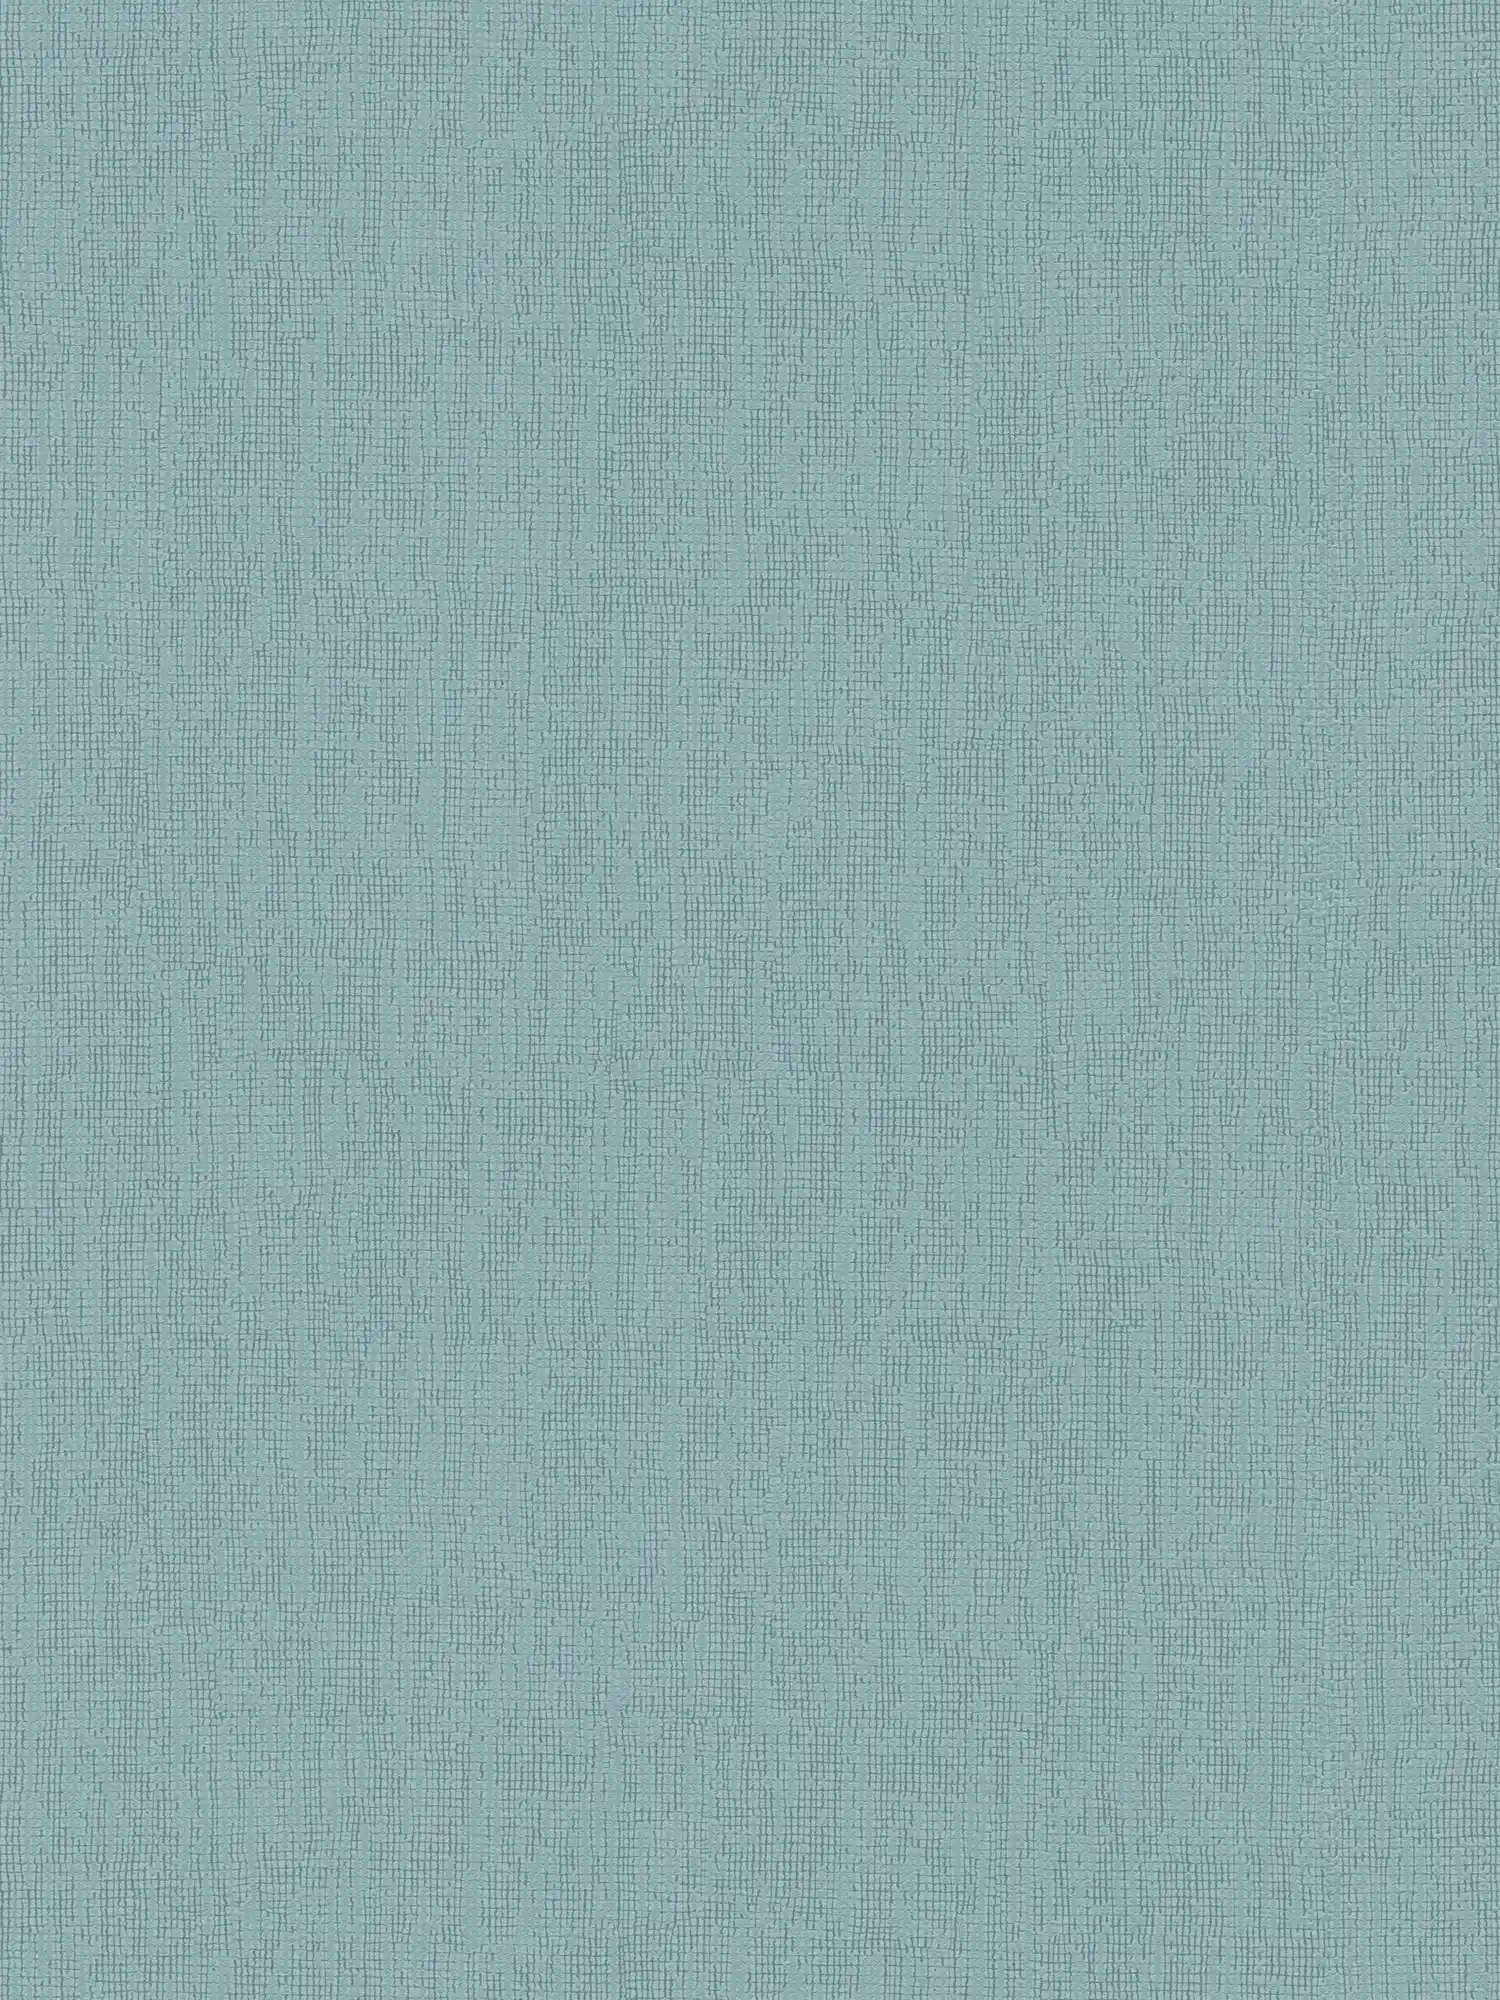 Papier peint bleu clair uni avec détails structurés, styles Scandi
